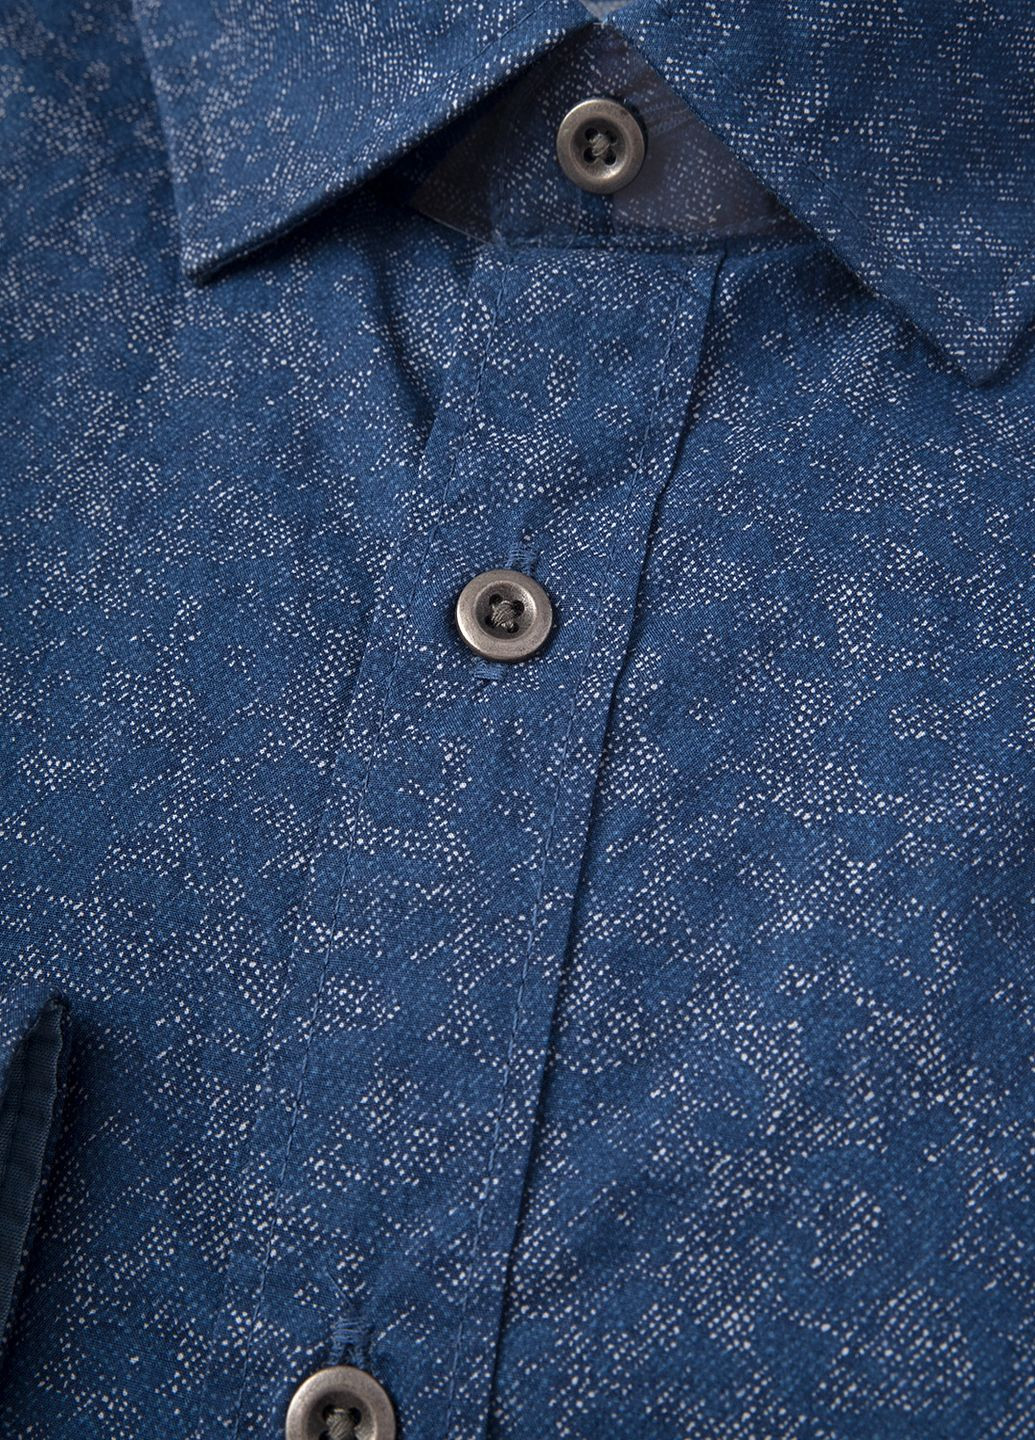 Синяя рубашка с абстрактным узором Olymp